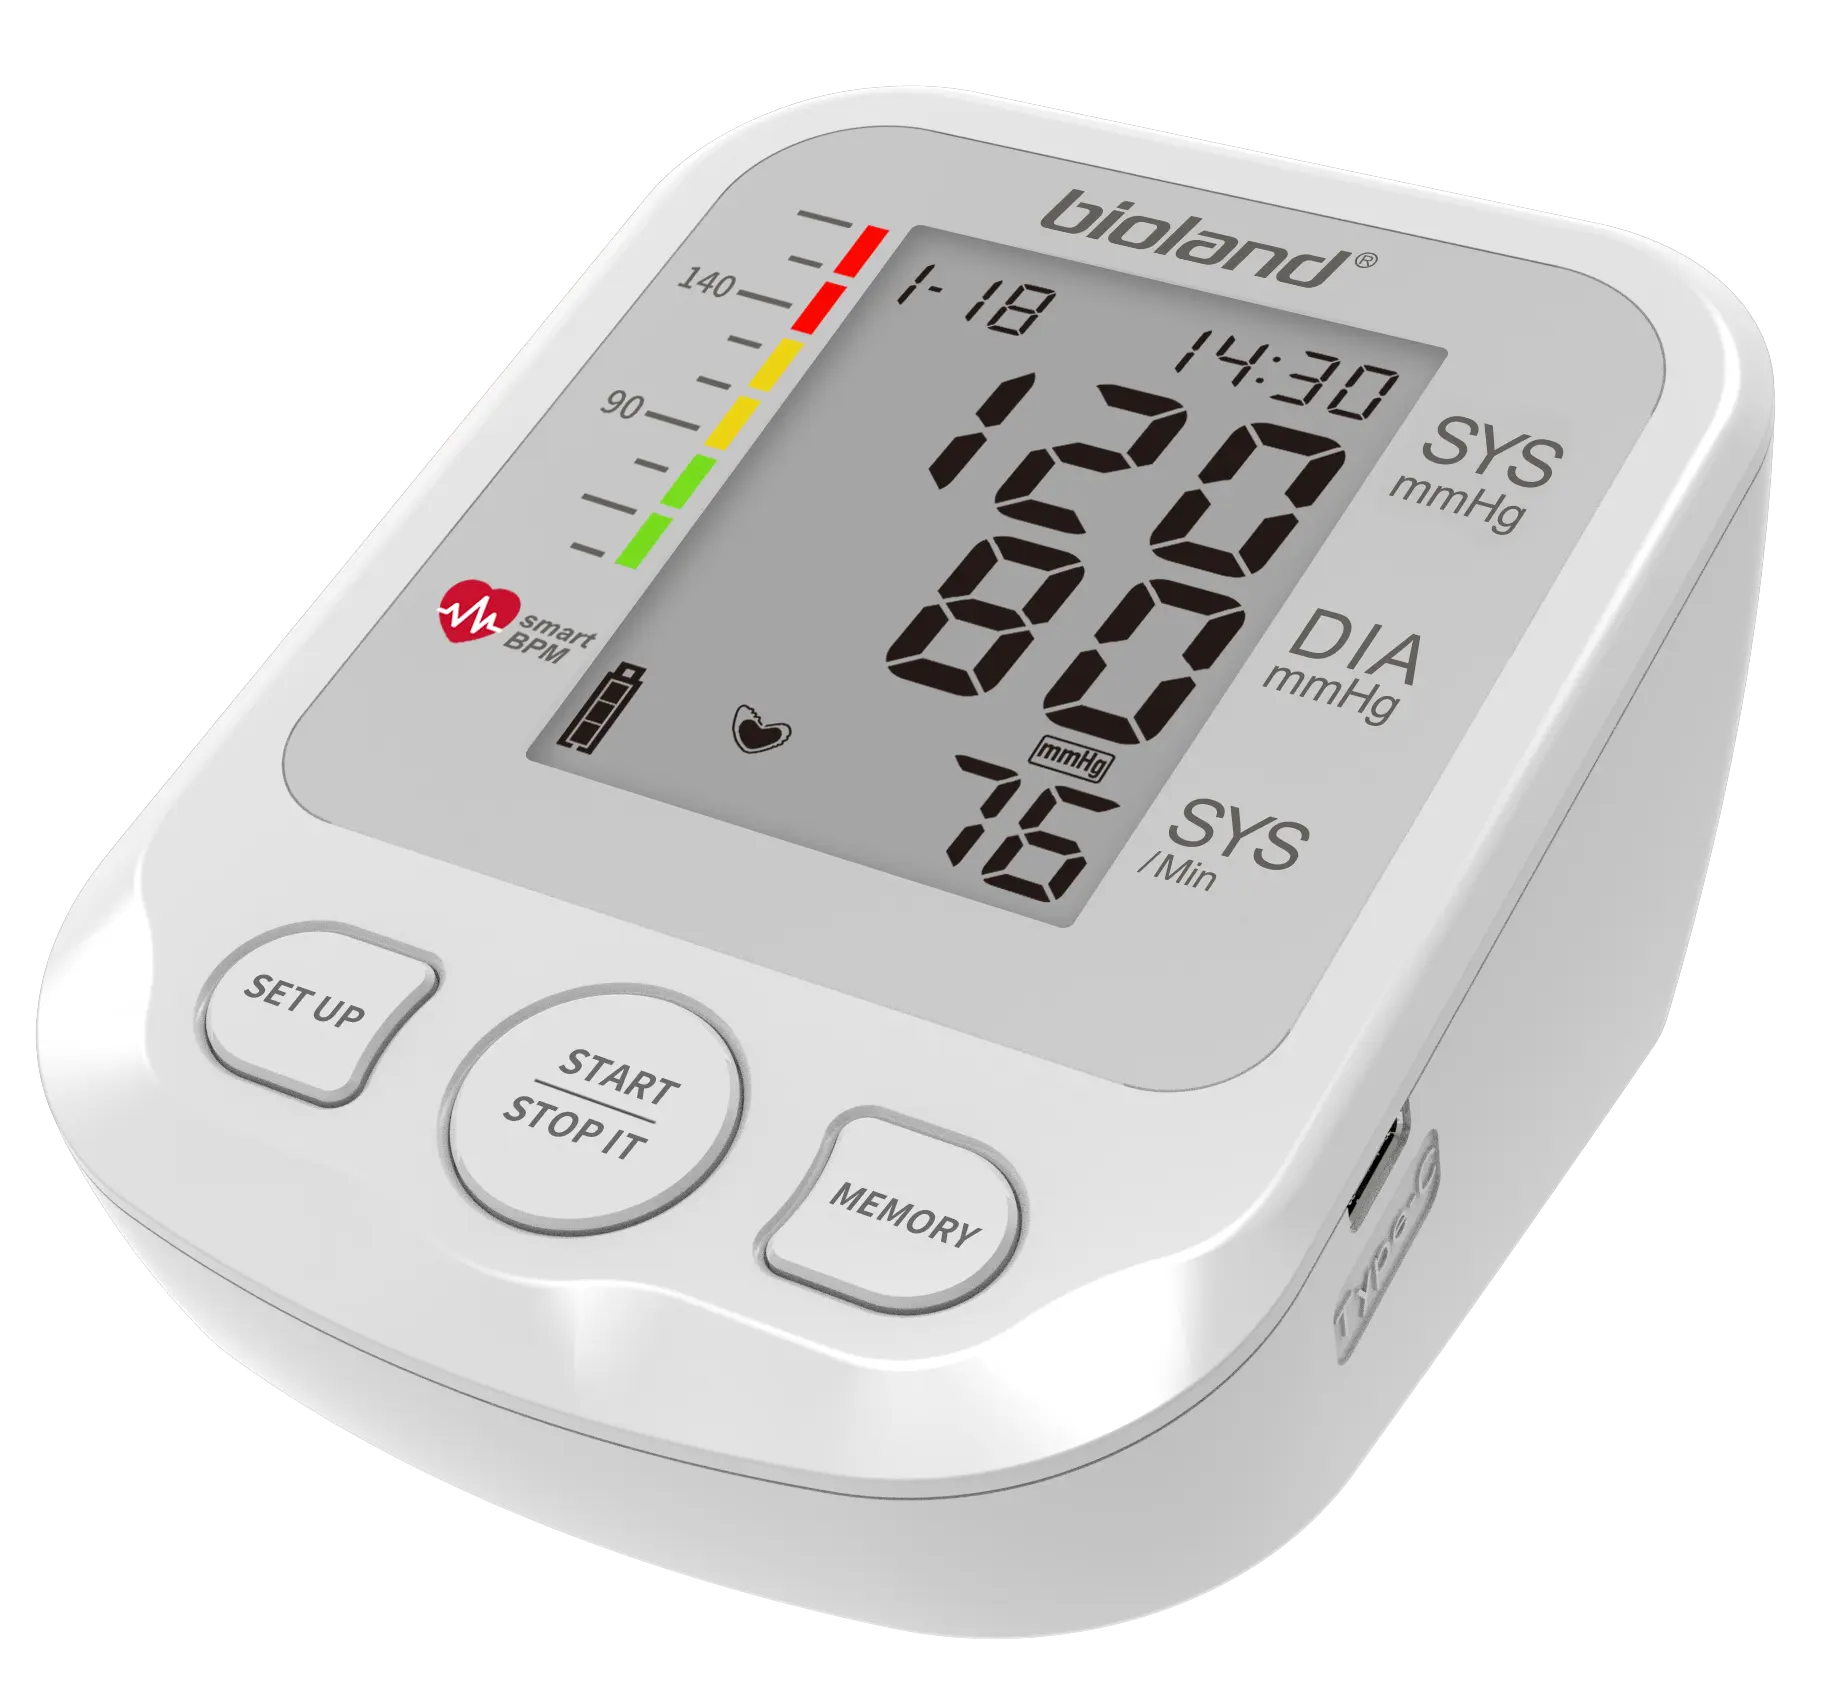 Xách tay tự động BP Màn hình huyết áp máy kỹ thuật số tensiometer sphygmomanomet trên BP Máy huyết áp màn hình